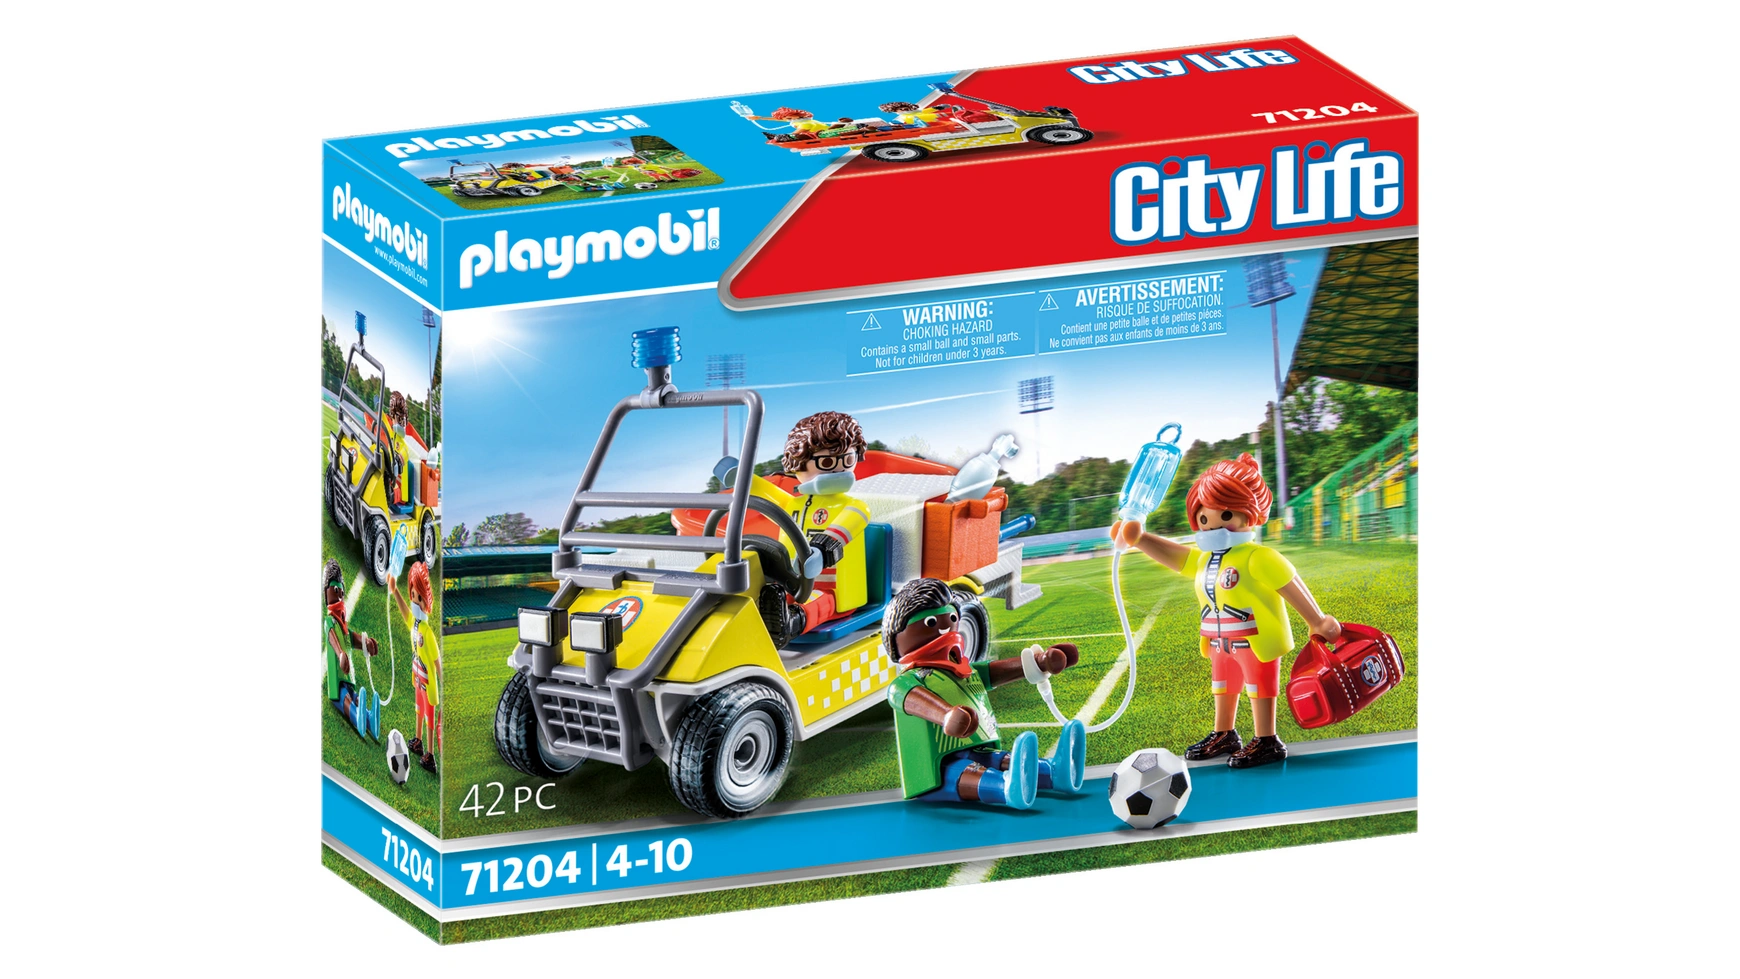 Городская жизнь спасательная тележка Playmobil бизиборд городская жизнь 4250831